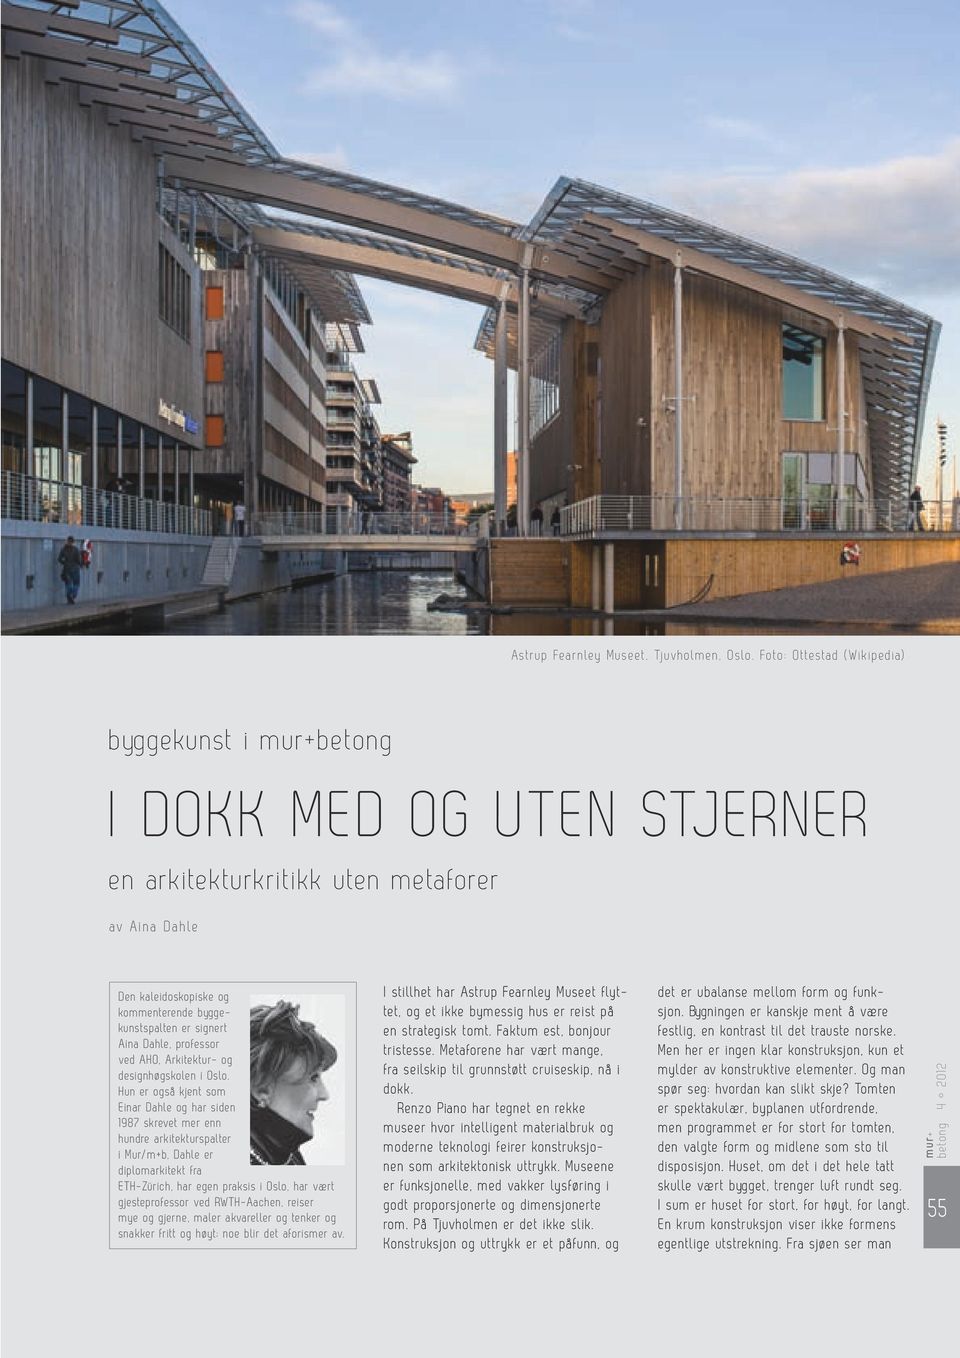 Dahle, professor ved AHO, Arkitektur- og design h øgskolen i Oslo.